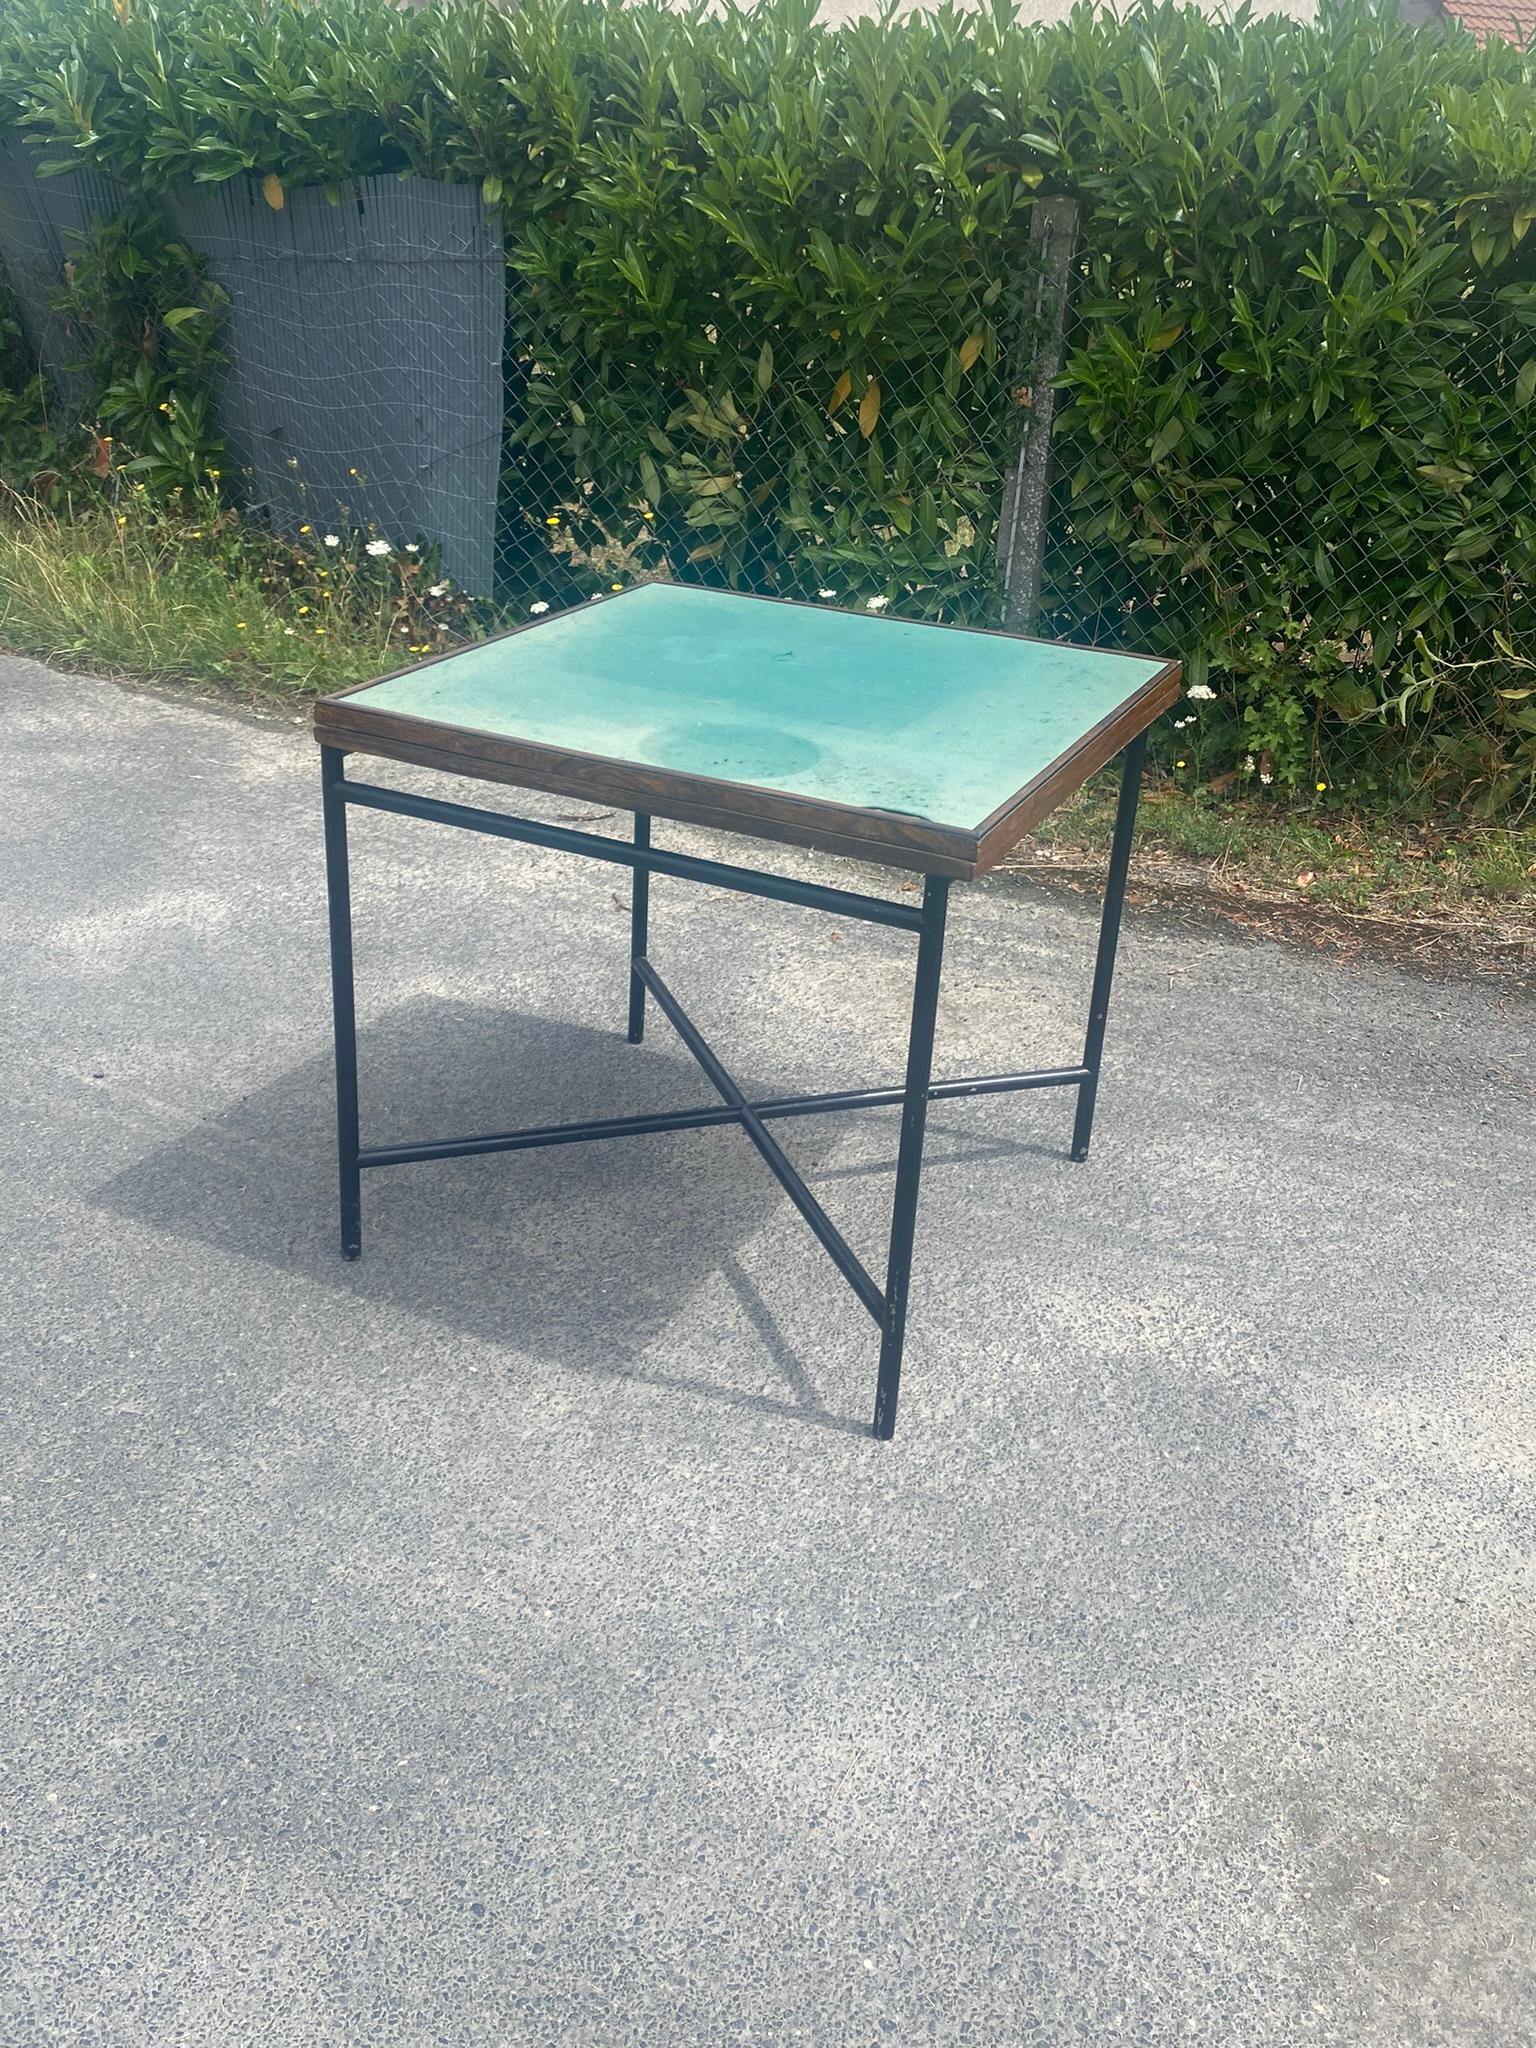 Table de jeu et table à système moderniste art déco vers 1930
base repeinte, métal nickelé d'origine